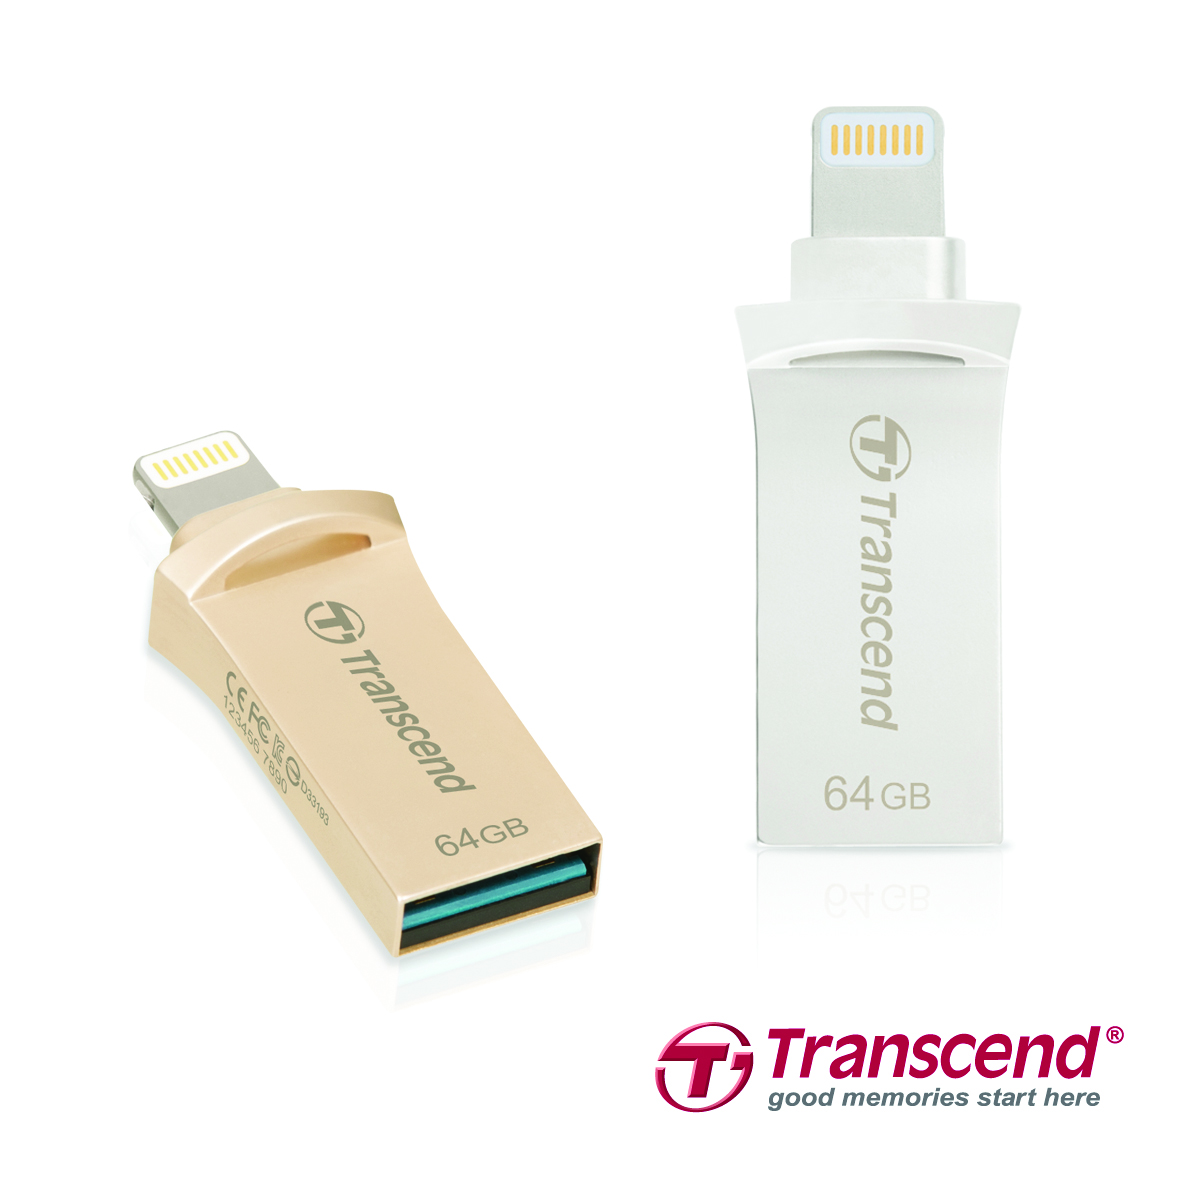 Transcend presenta el pendrive JetDrive Go 500 de diseño moderno y con  conector dual para aumentar el espacio de almacenamiento de su iPhone / iPad  / iPod forma instántanea - Transcend